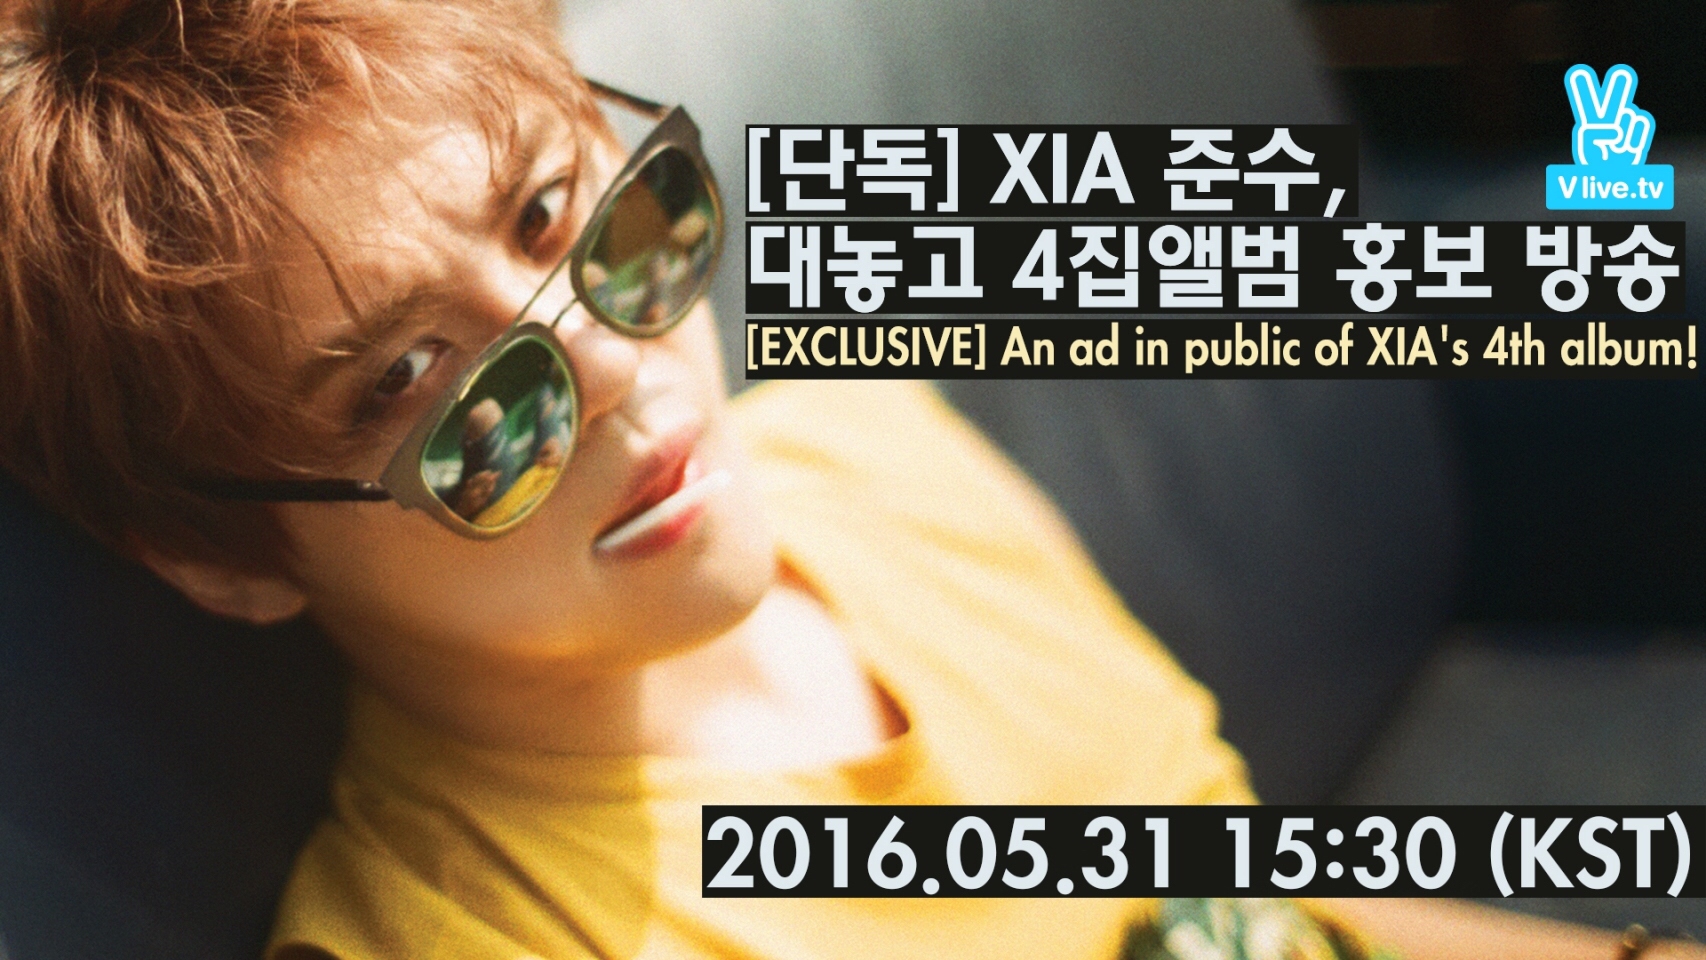 [단독] XIA 준수, 대놓고 4집앨범 홍보 방송 ([EXCLUSIVE] An ad in public of XIA's 4th album!)